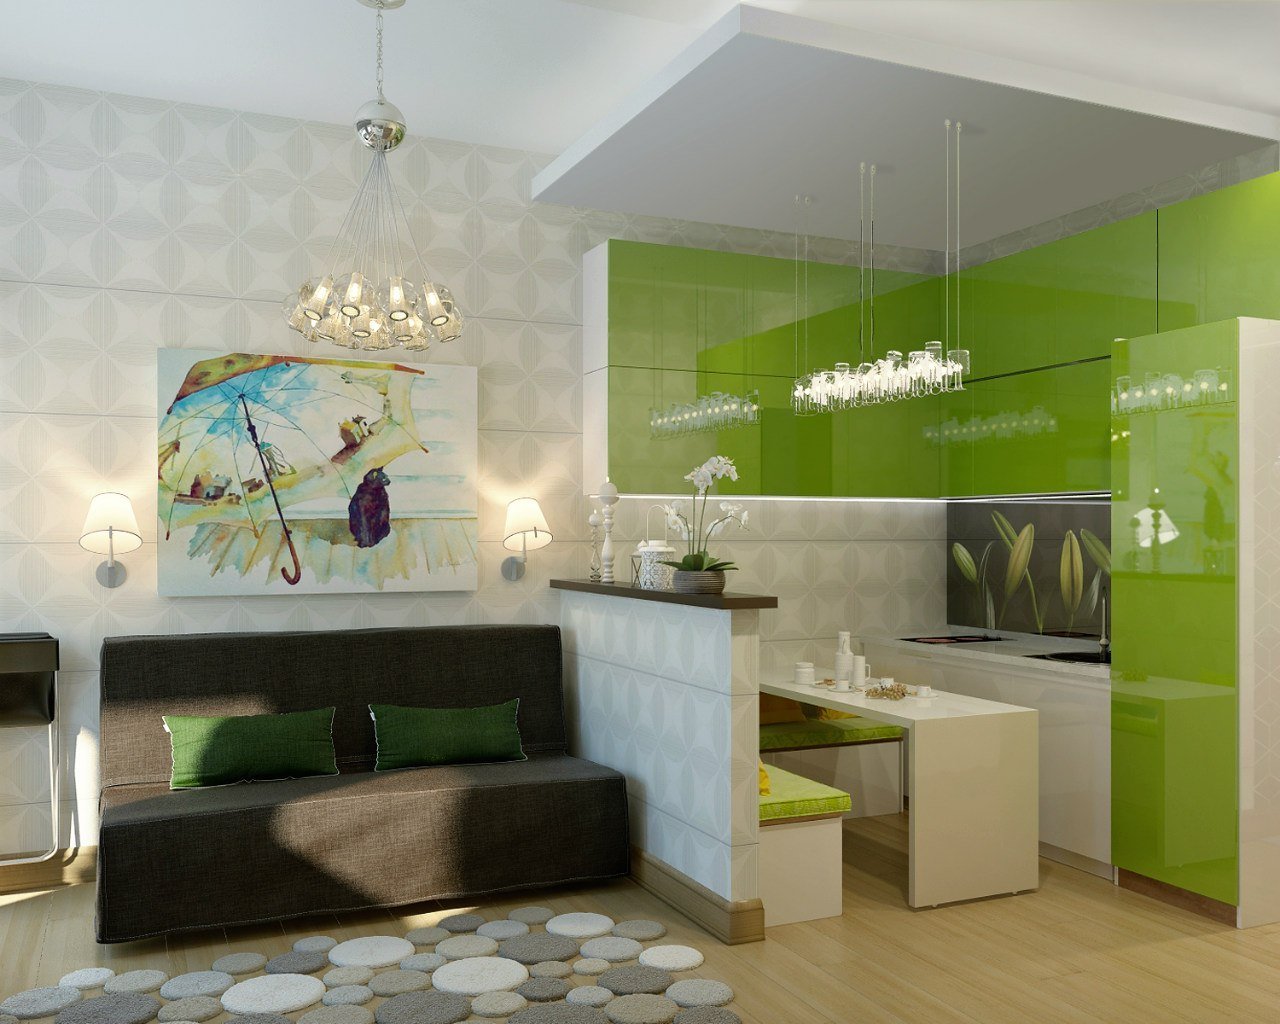 Купить однокомнатную квартиру в зеленом. Зеленая кухня с гостинной 20кв м. Кухня гостиная в зеленых тонах. Интерьер кухни в гостинке. Кухня гостиная в зеленом цвете.